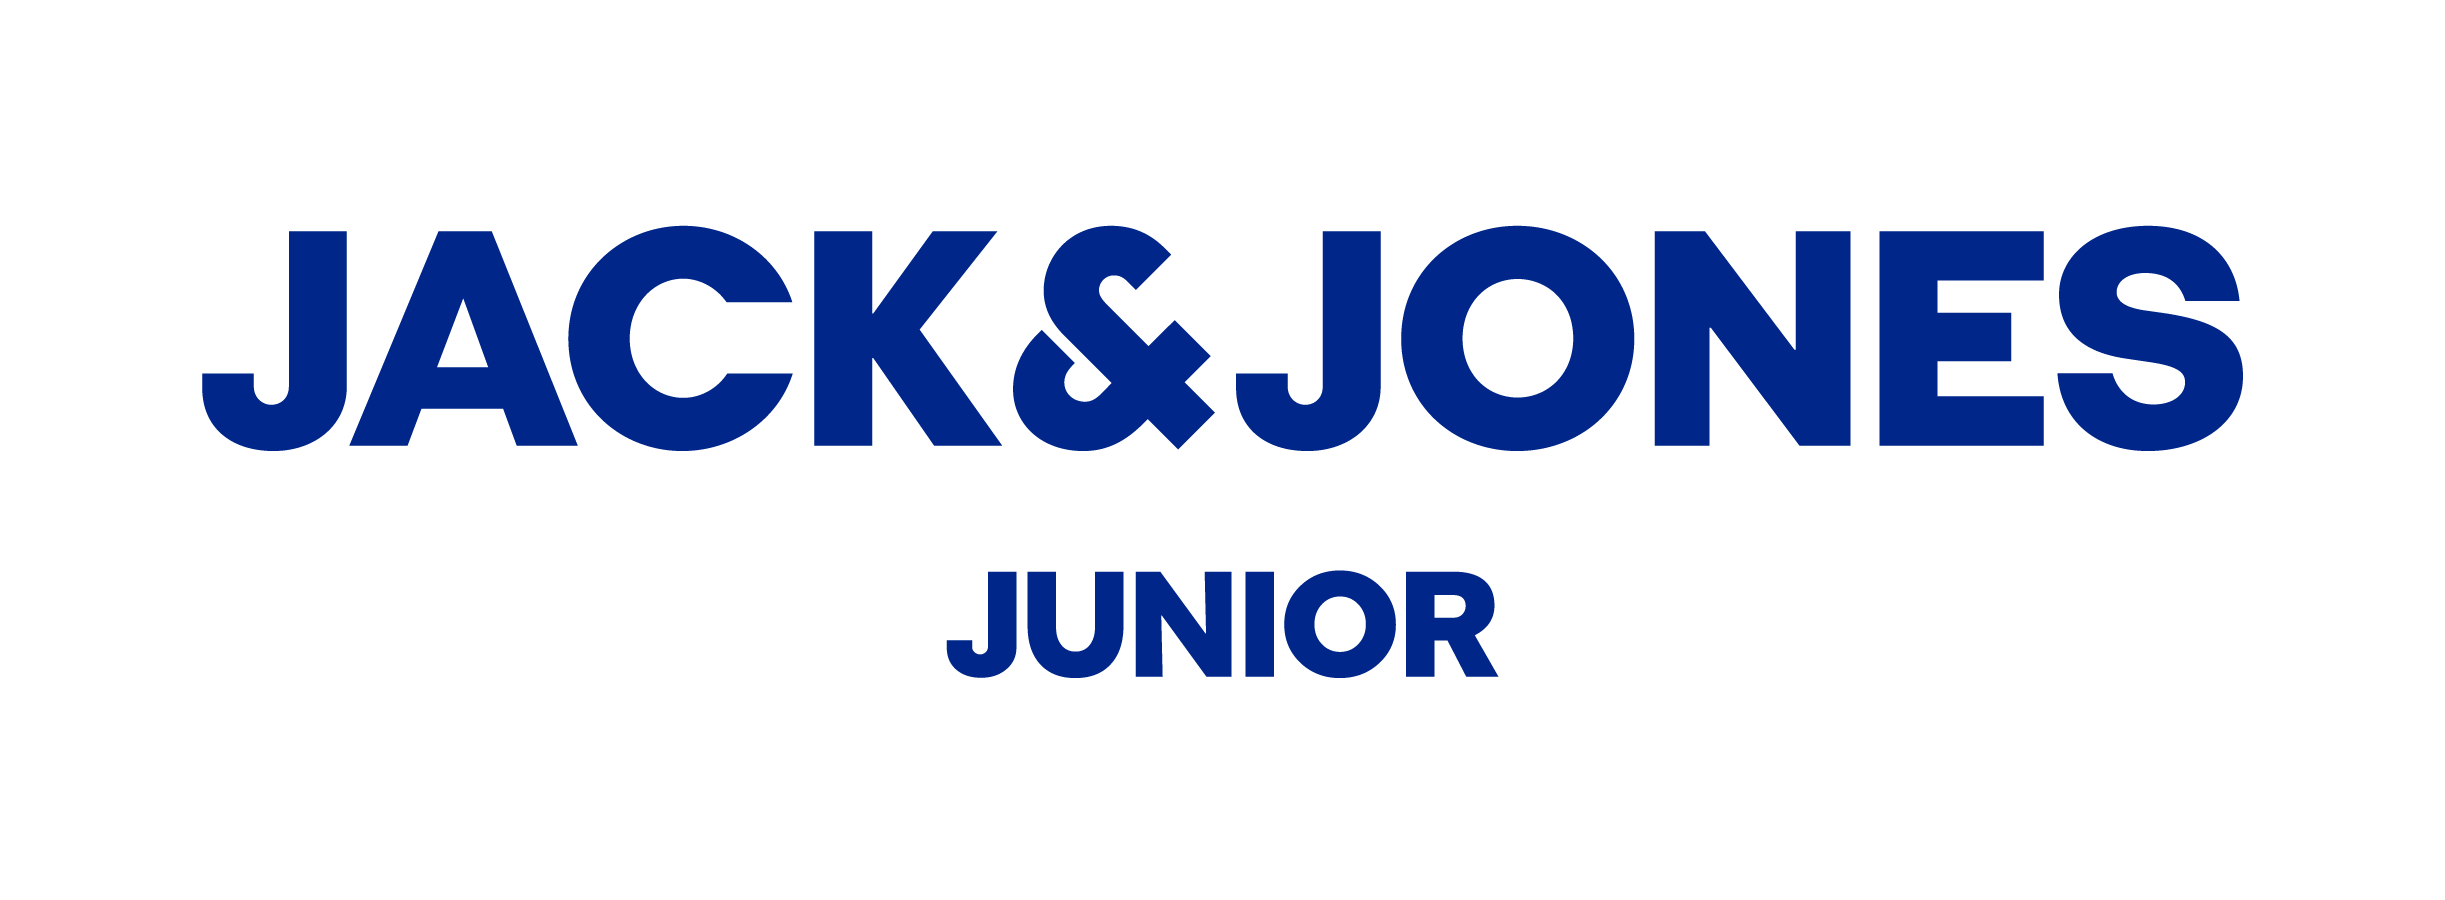 Jack & Jones junior